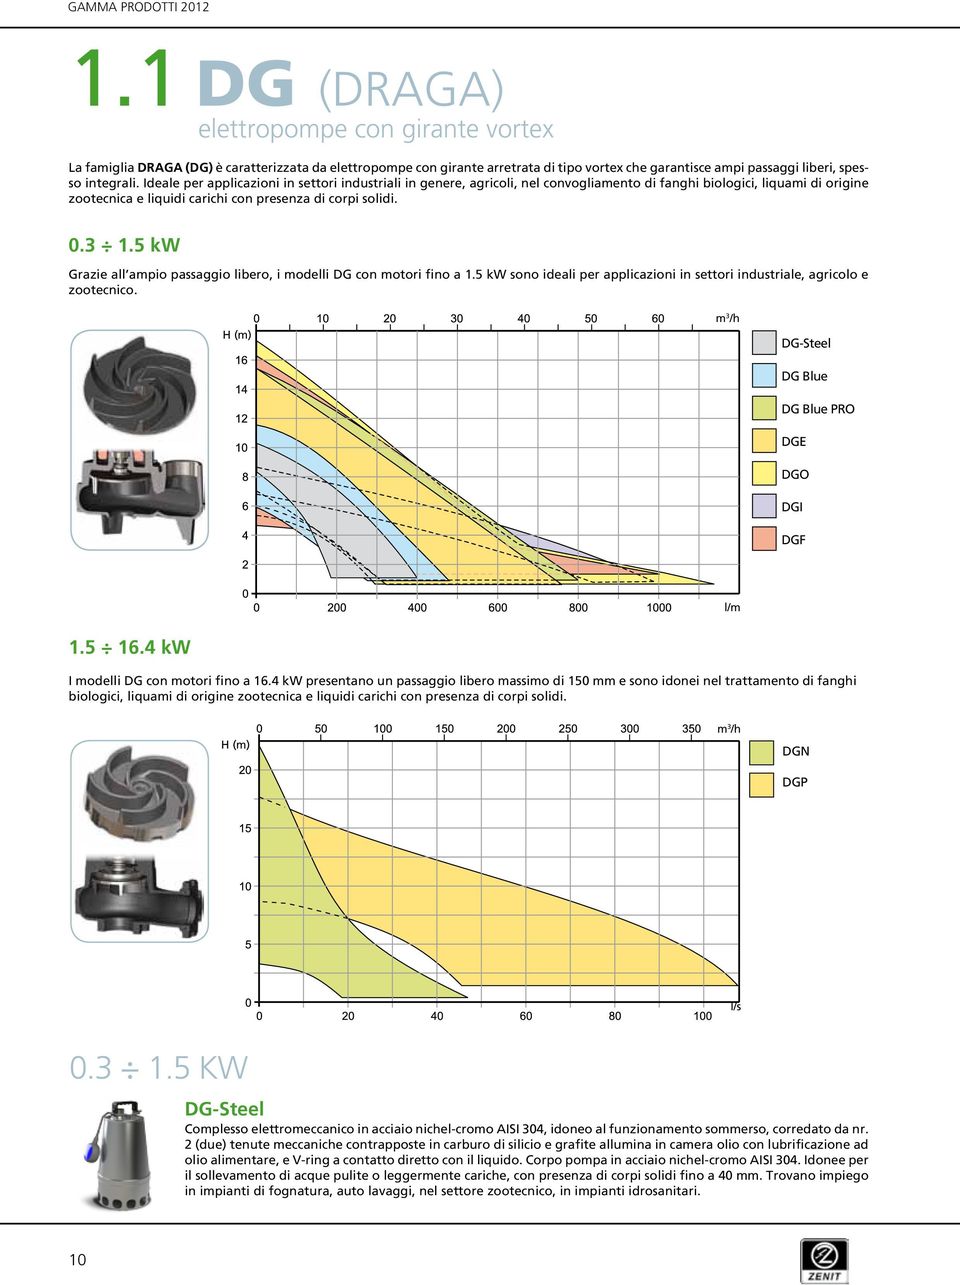 5 kw Grazie all ampio passaggio, i modelli DG con motori fino a 1.5 kw sono ideali per applicazioni in settori industriale, agricolo e zootecnico.